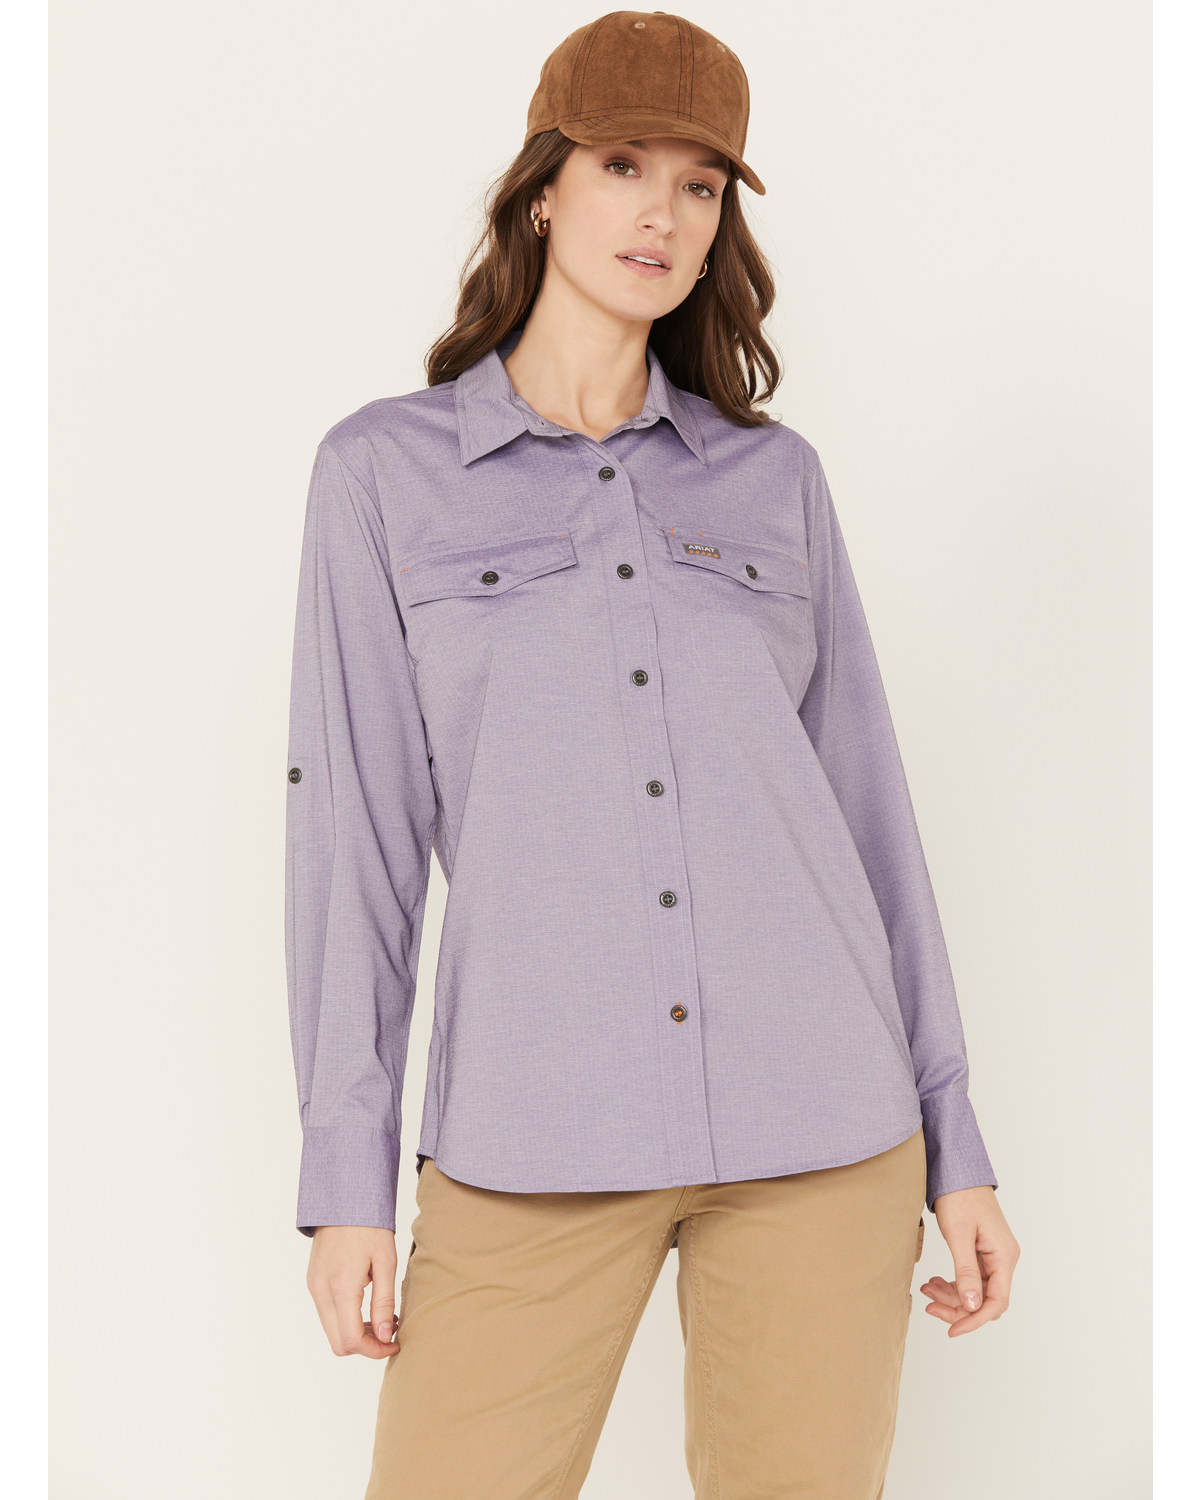 Ariat Women's Rebar VentTEK Long Sleeve Button Down Work Shirt